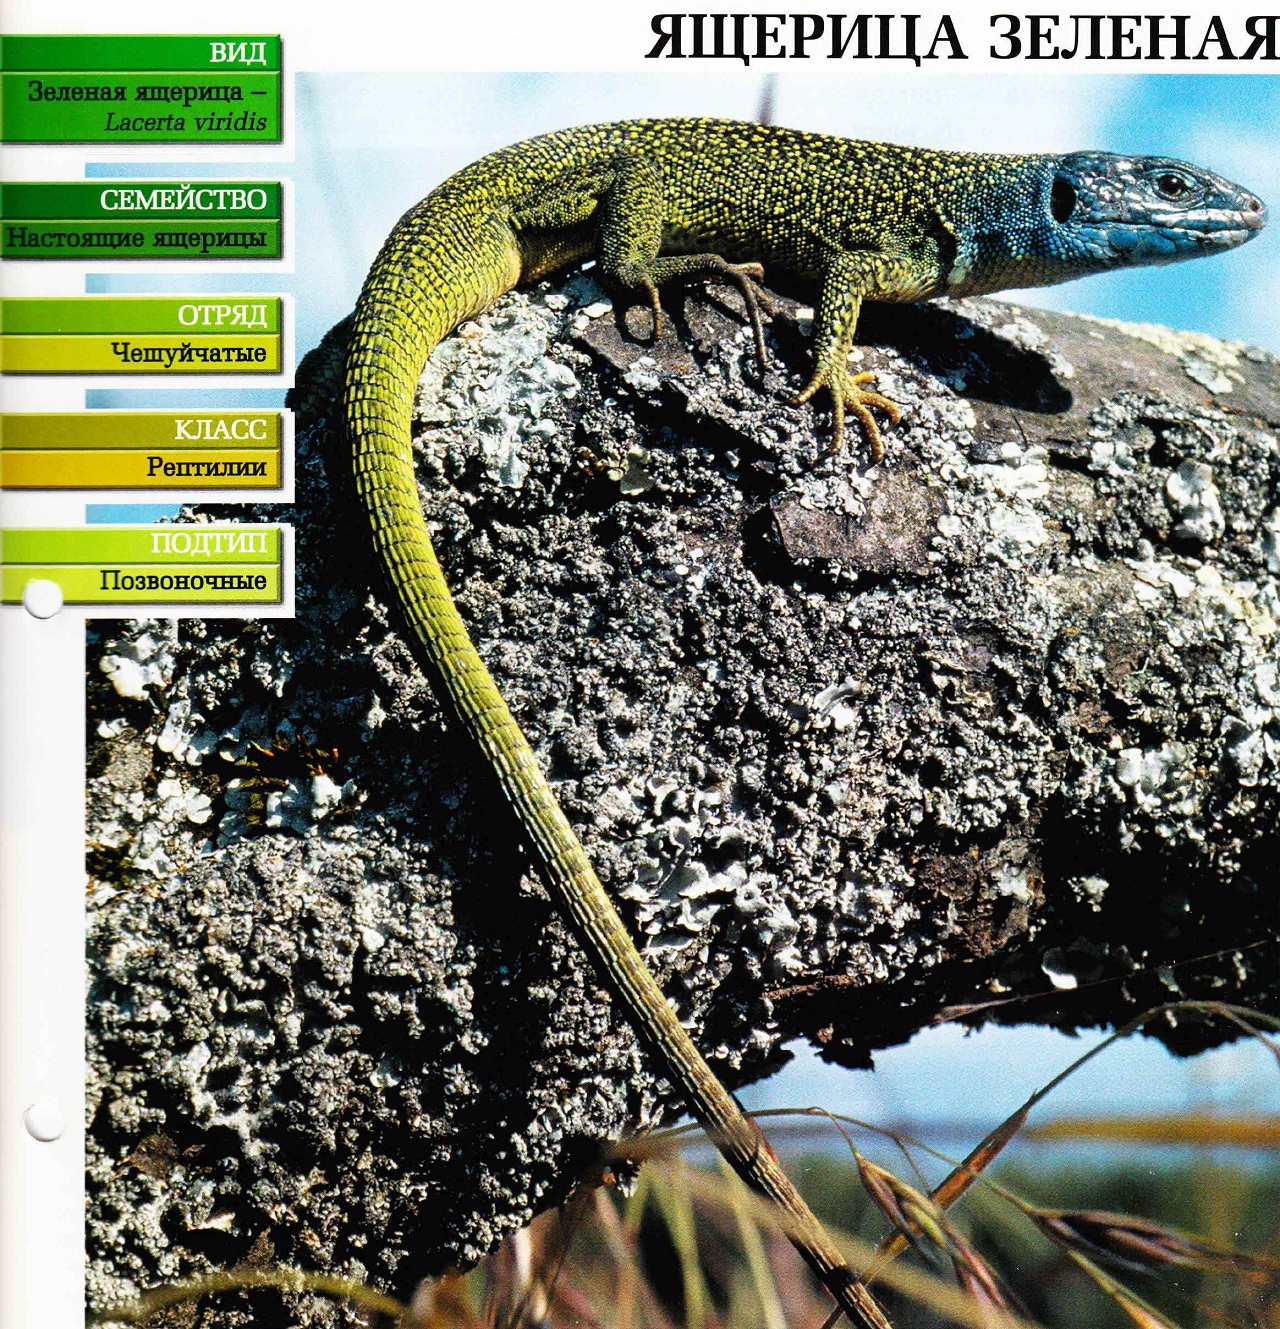 Систематика (научная классификация) зелёной ящерицы. Lacerta viridis.